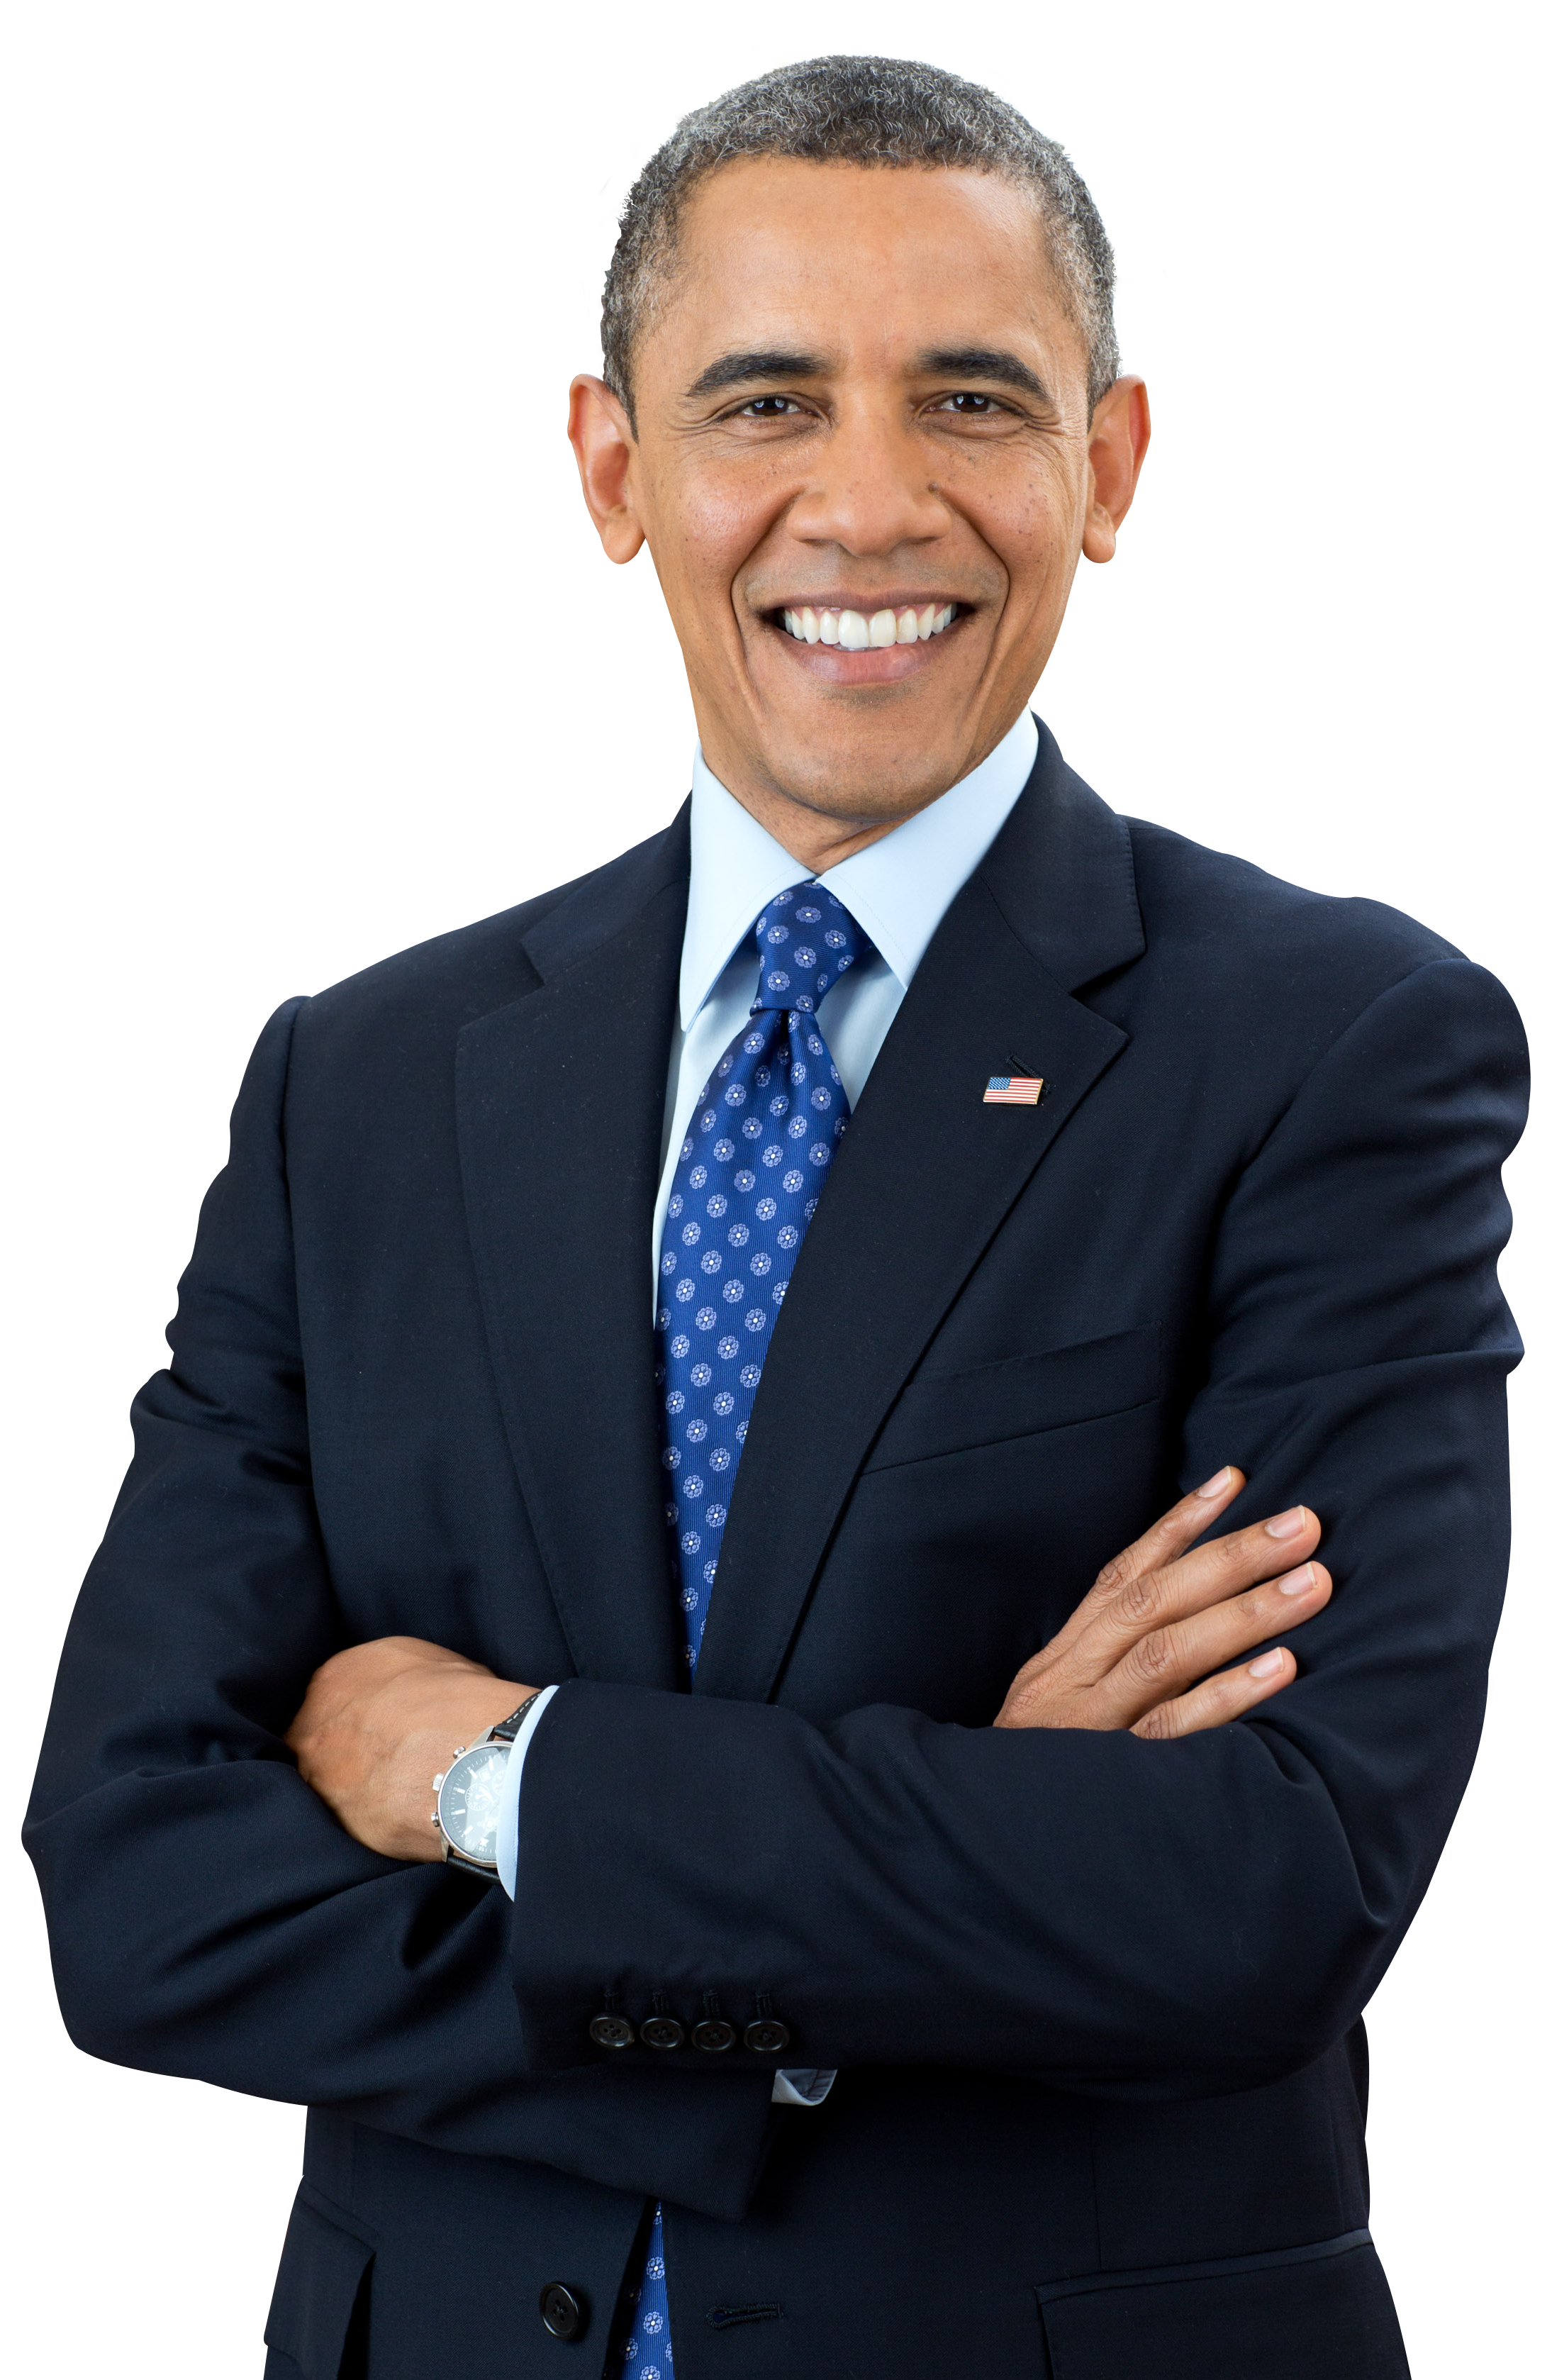 Obama Transparent Background - KibrisPDR